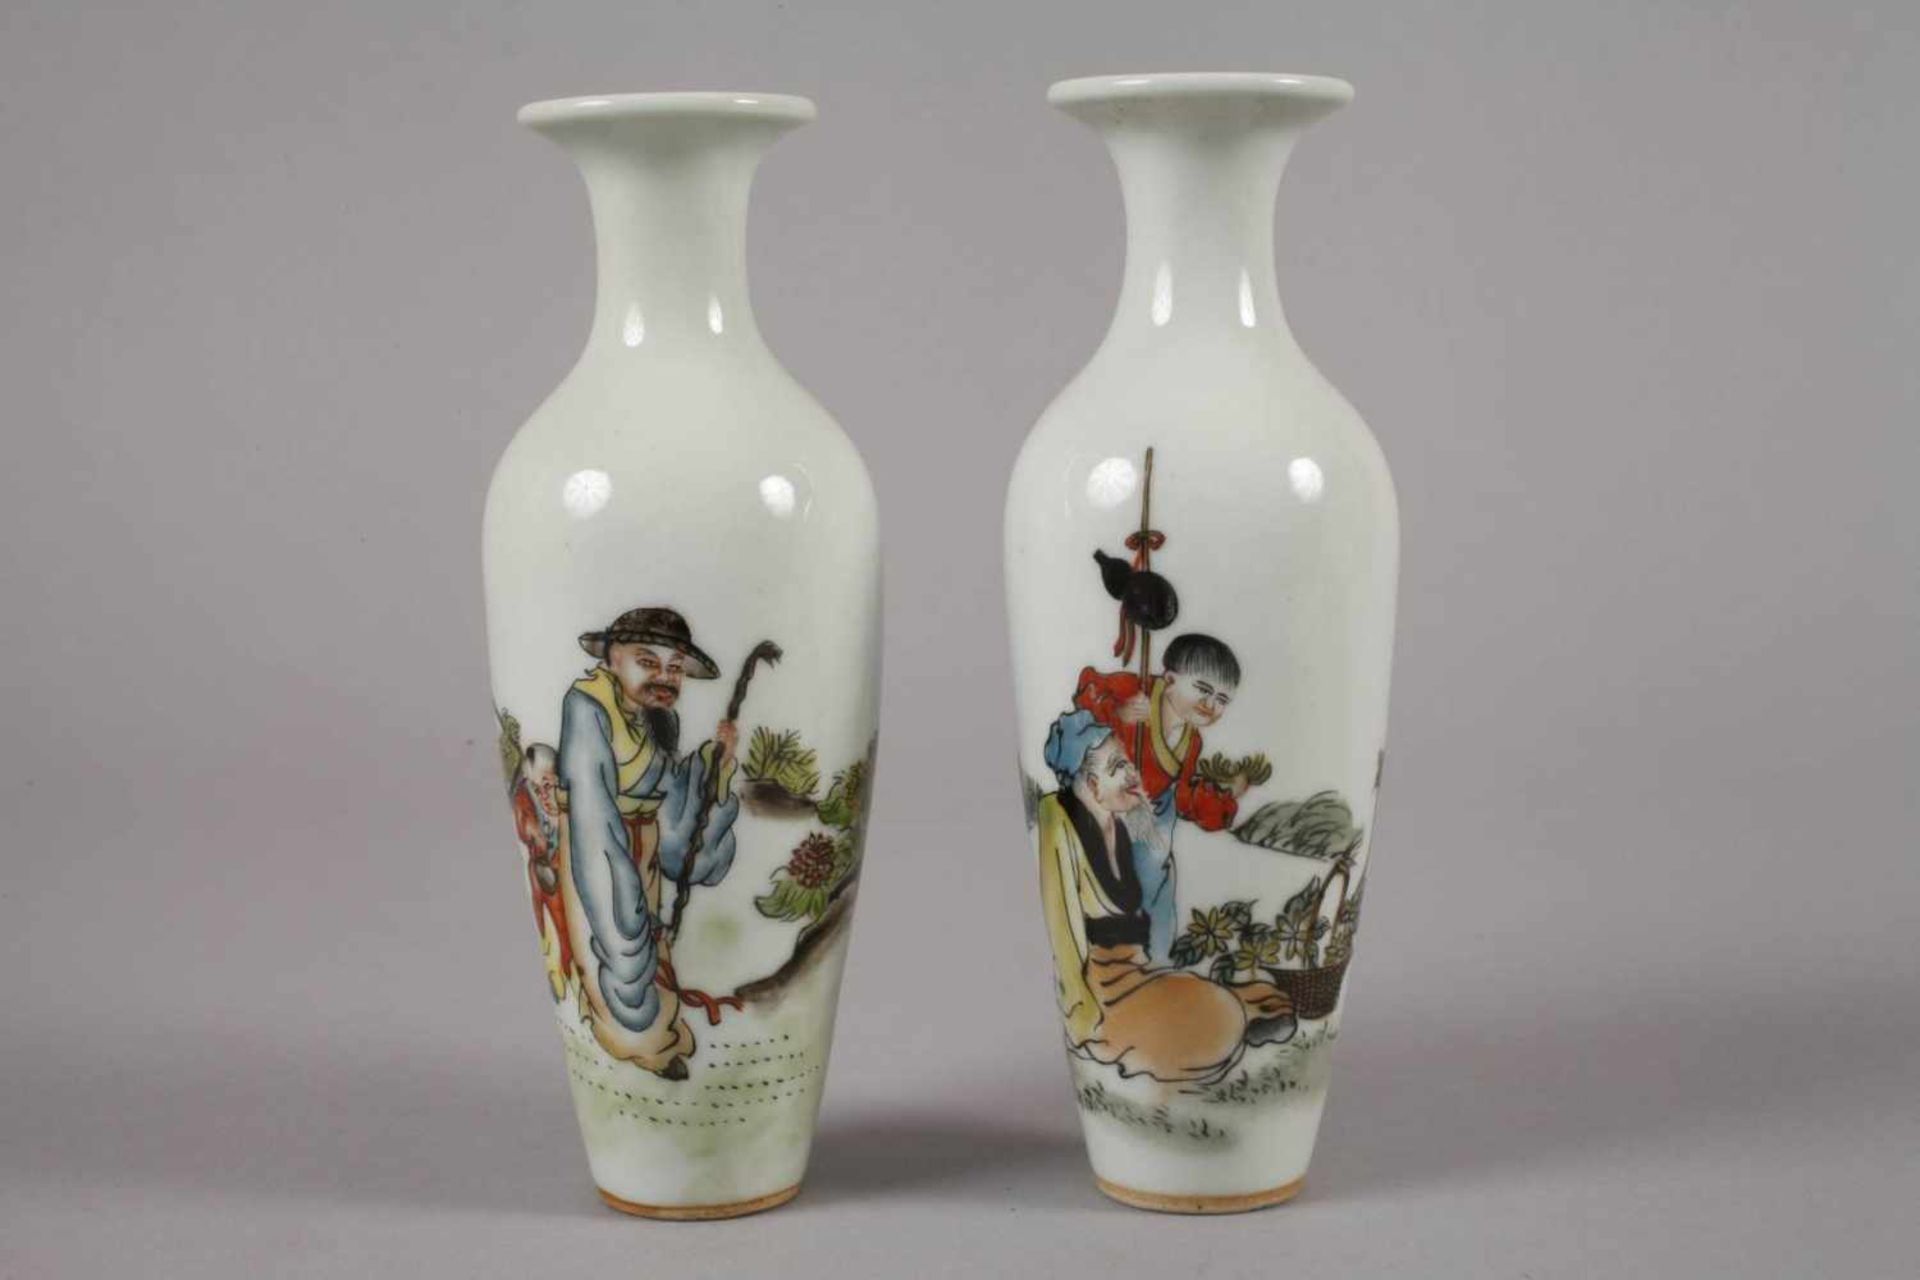 Sechs Vasen China1960er bis 1970er Jahre, gemarkt und signiert, Weißporzellan in polychromer - Bild 2 aus 12